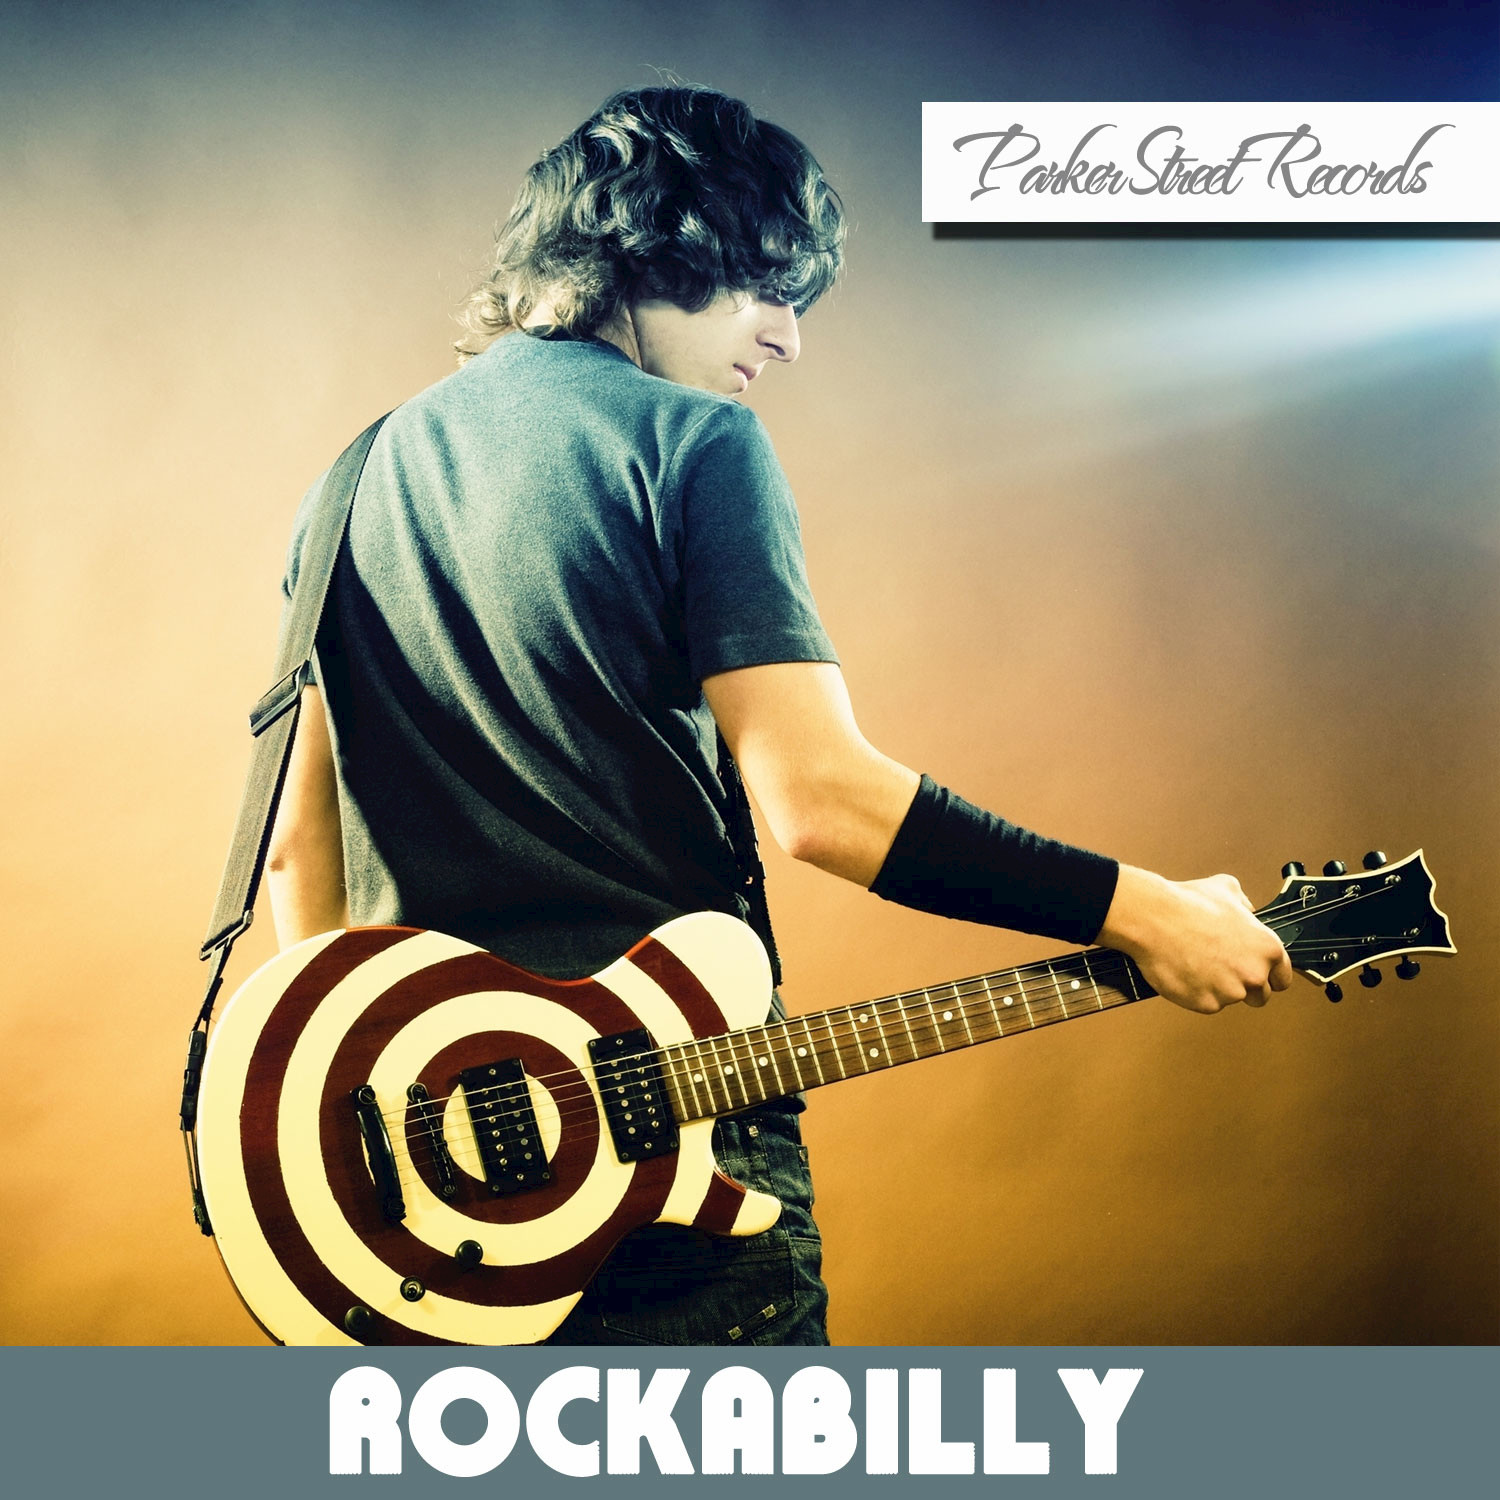 Highlights of Rockabilly